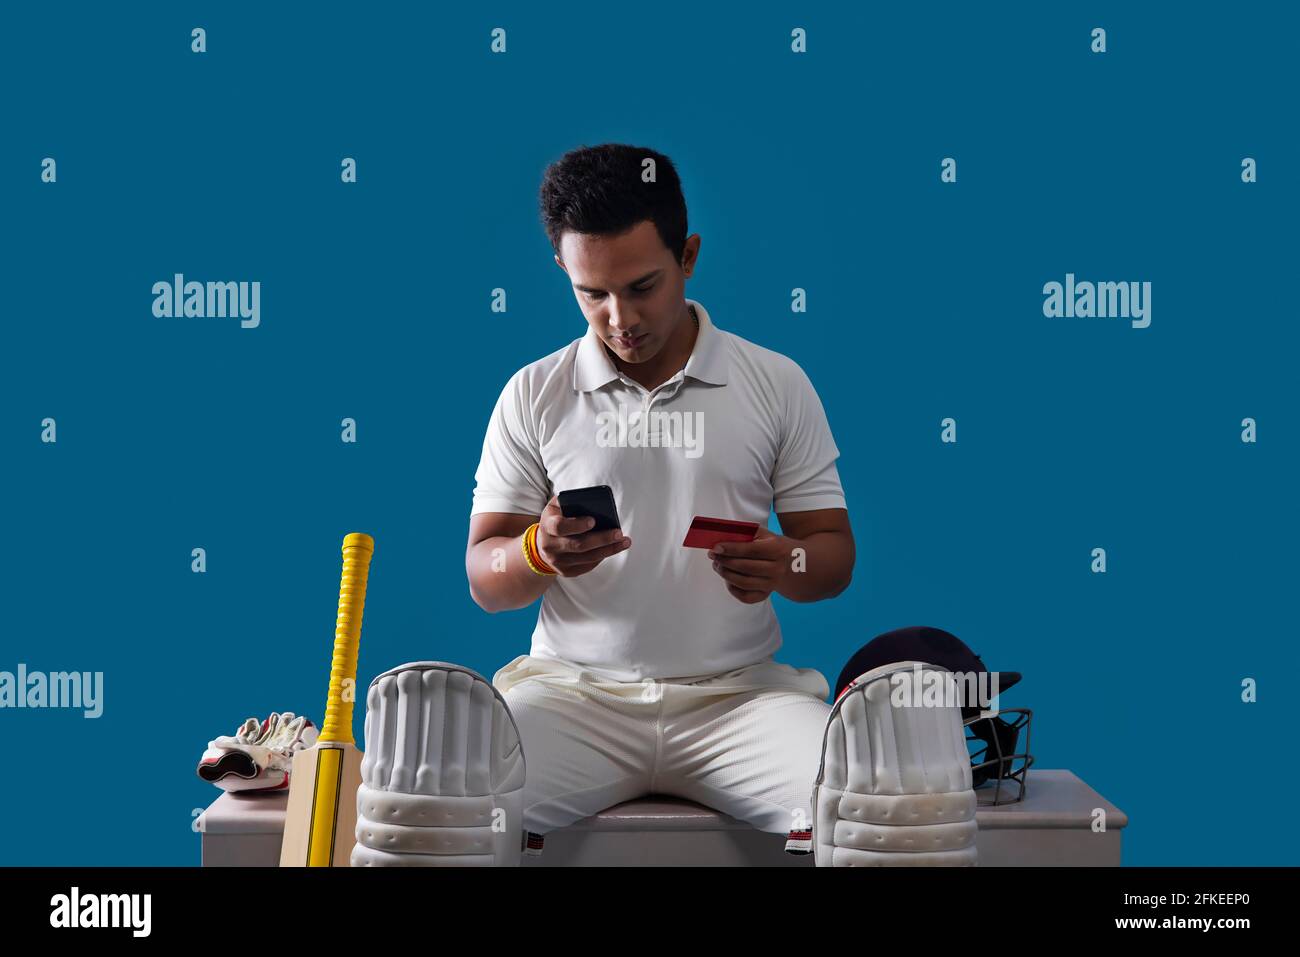 Ein Batsman, Cricketspieler, der in der Garderobe sitzt und Online-Shopping macht Stockfoto